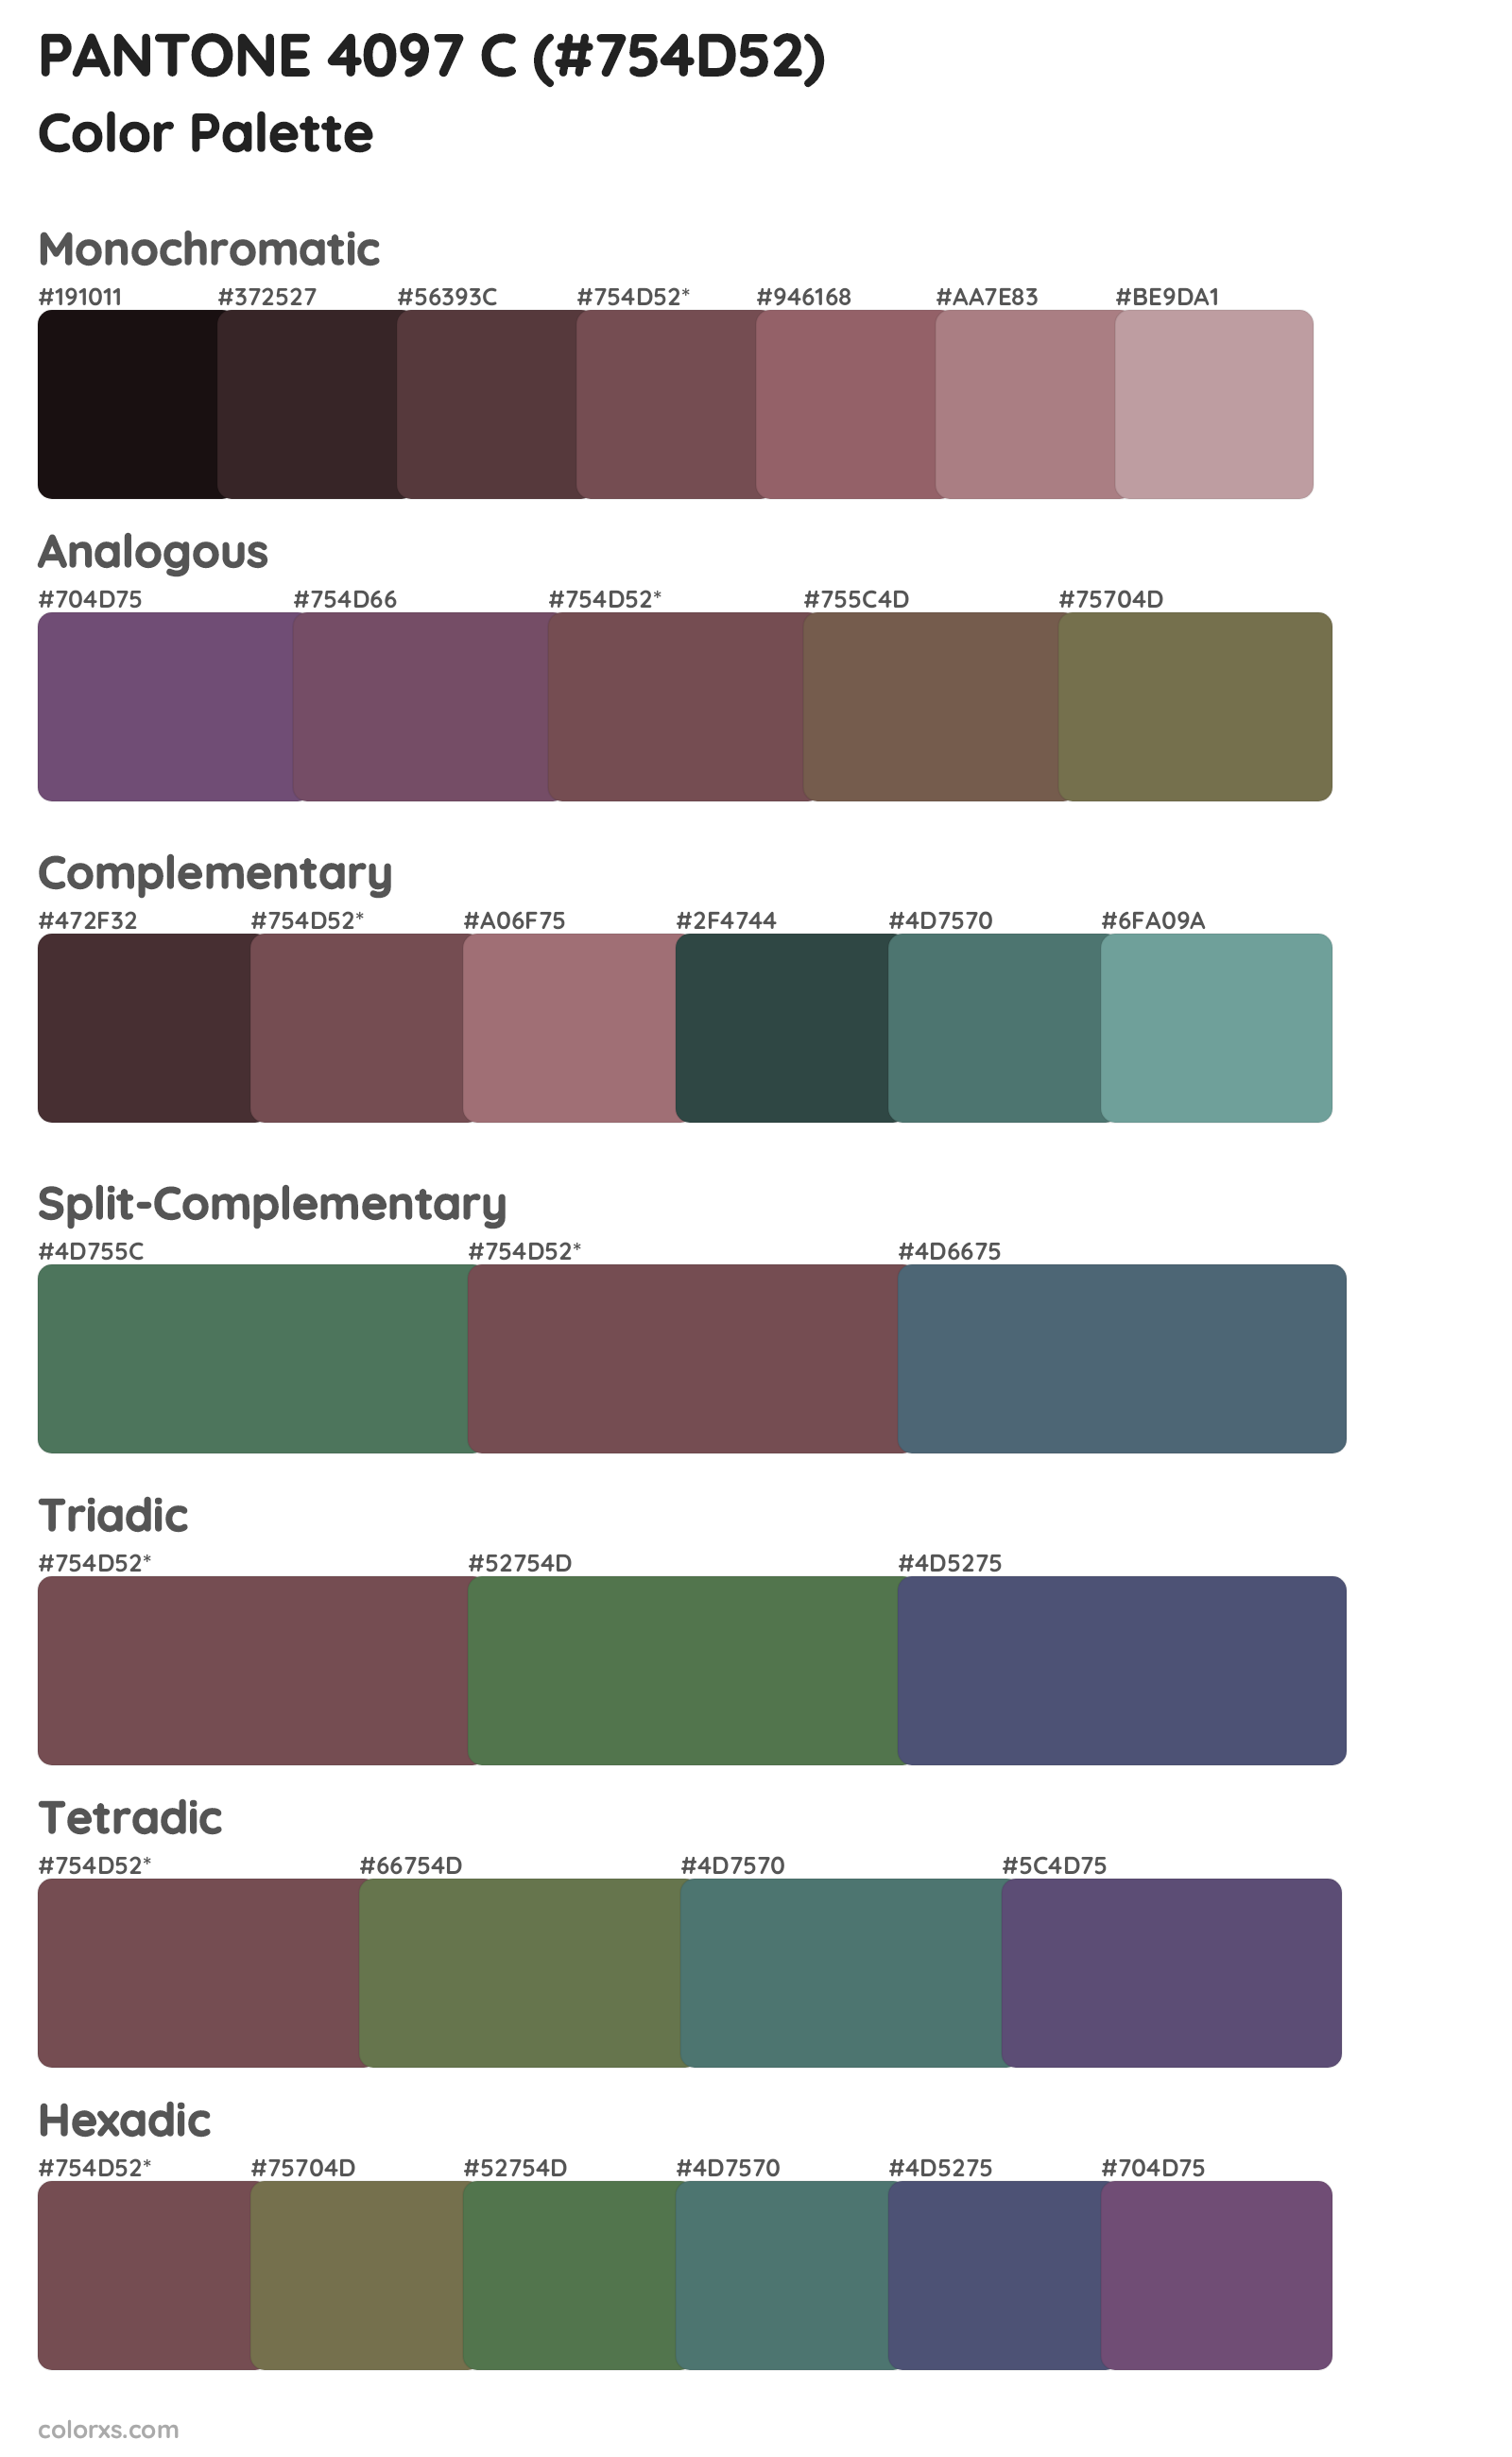 PANTONE 4097 C Color Scheme Palettes